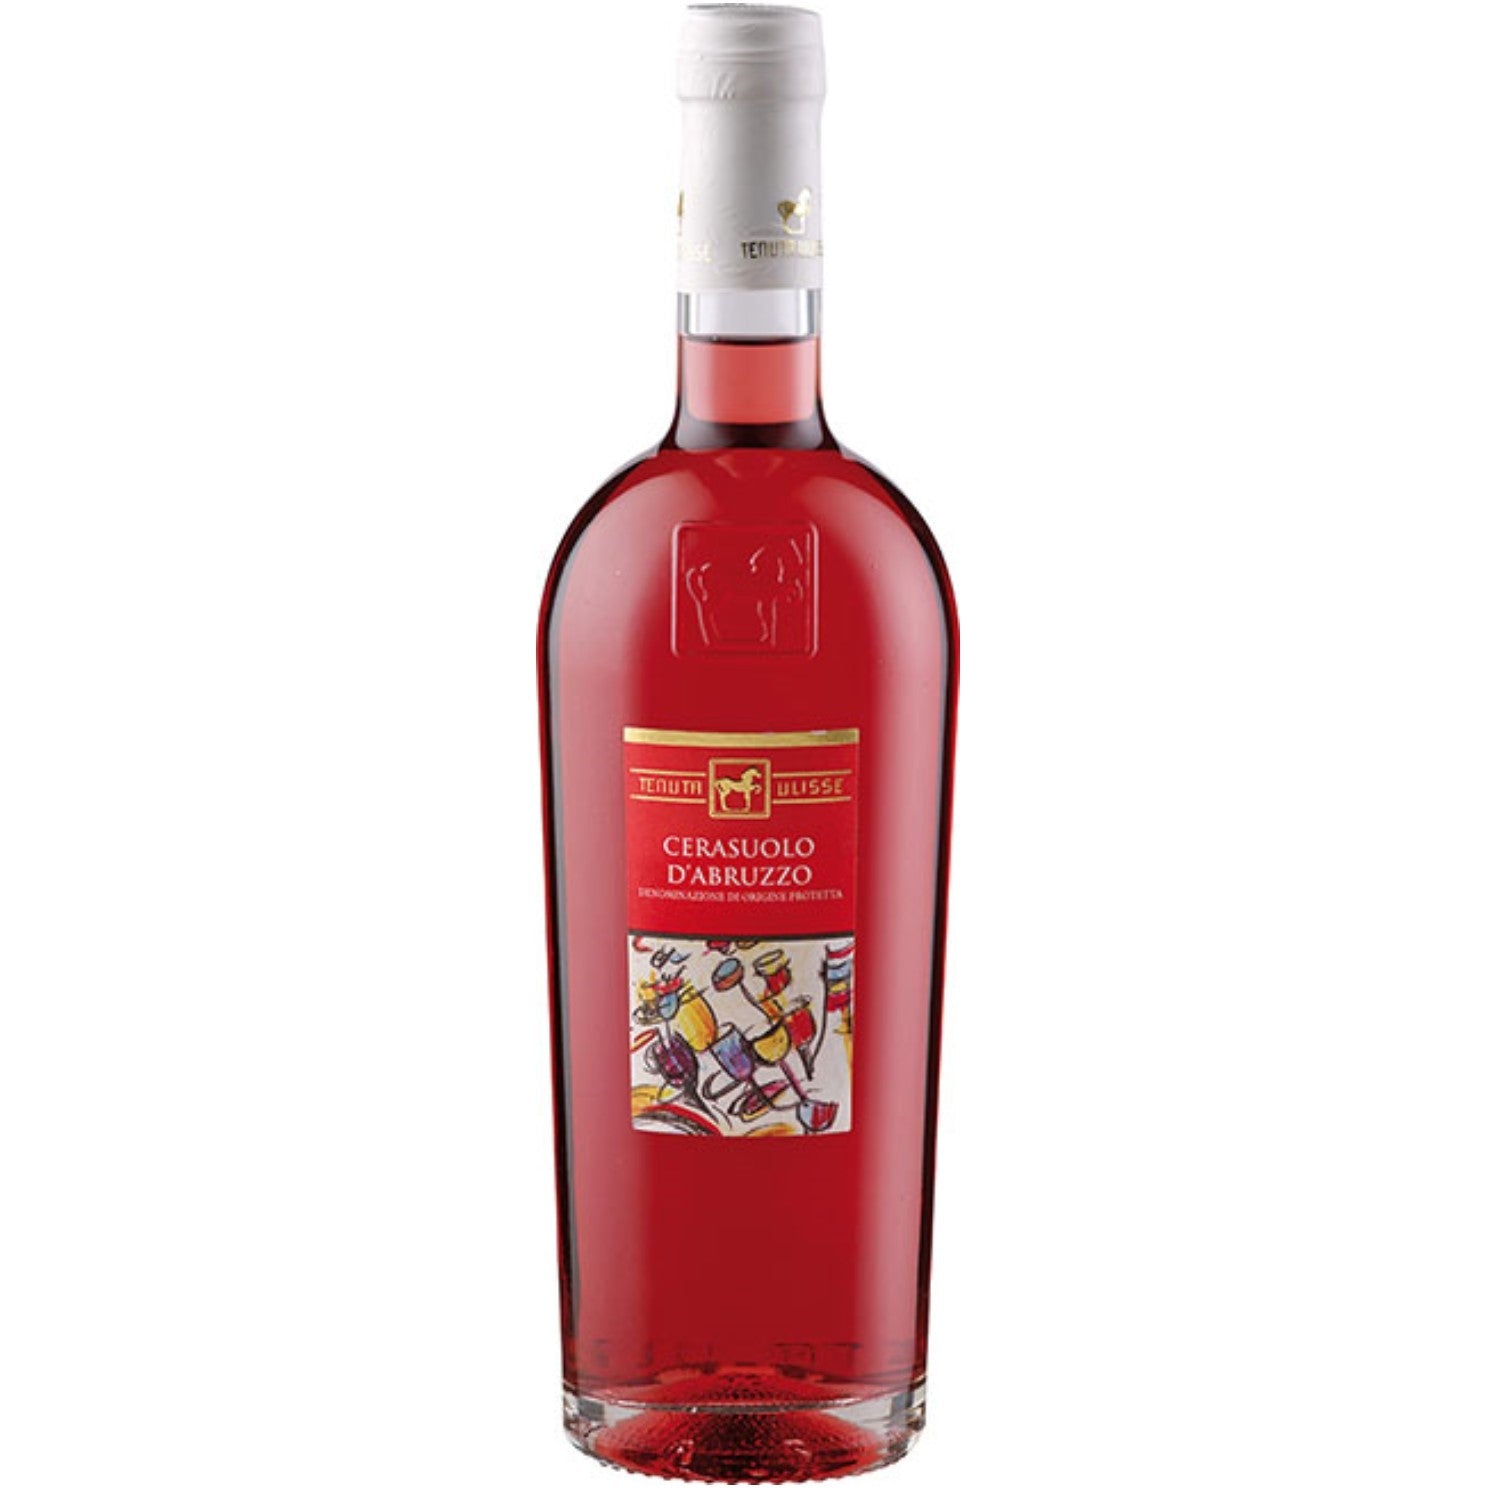 Tenuta Ulisse Cerasuolo d'Abruzzo Roséwein Wein Trocken DOP Italien (3 x 0.75l) - Versanel -